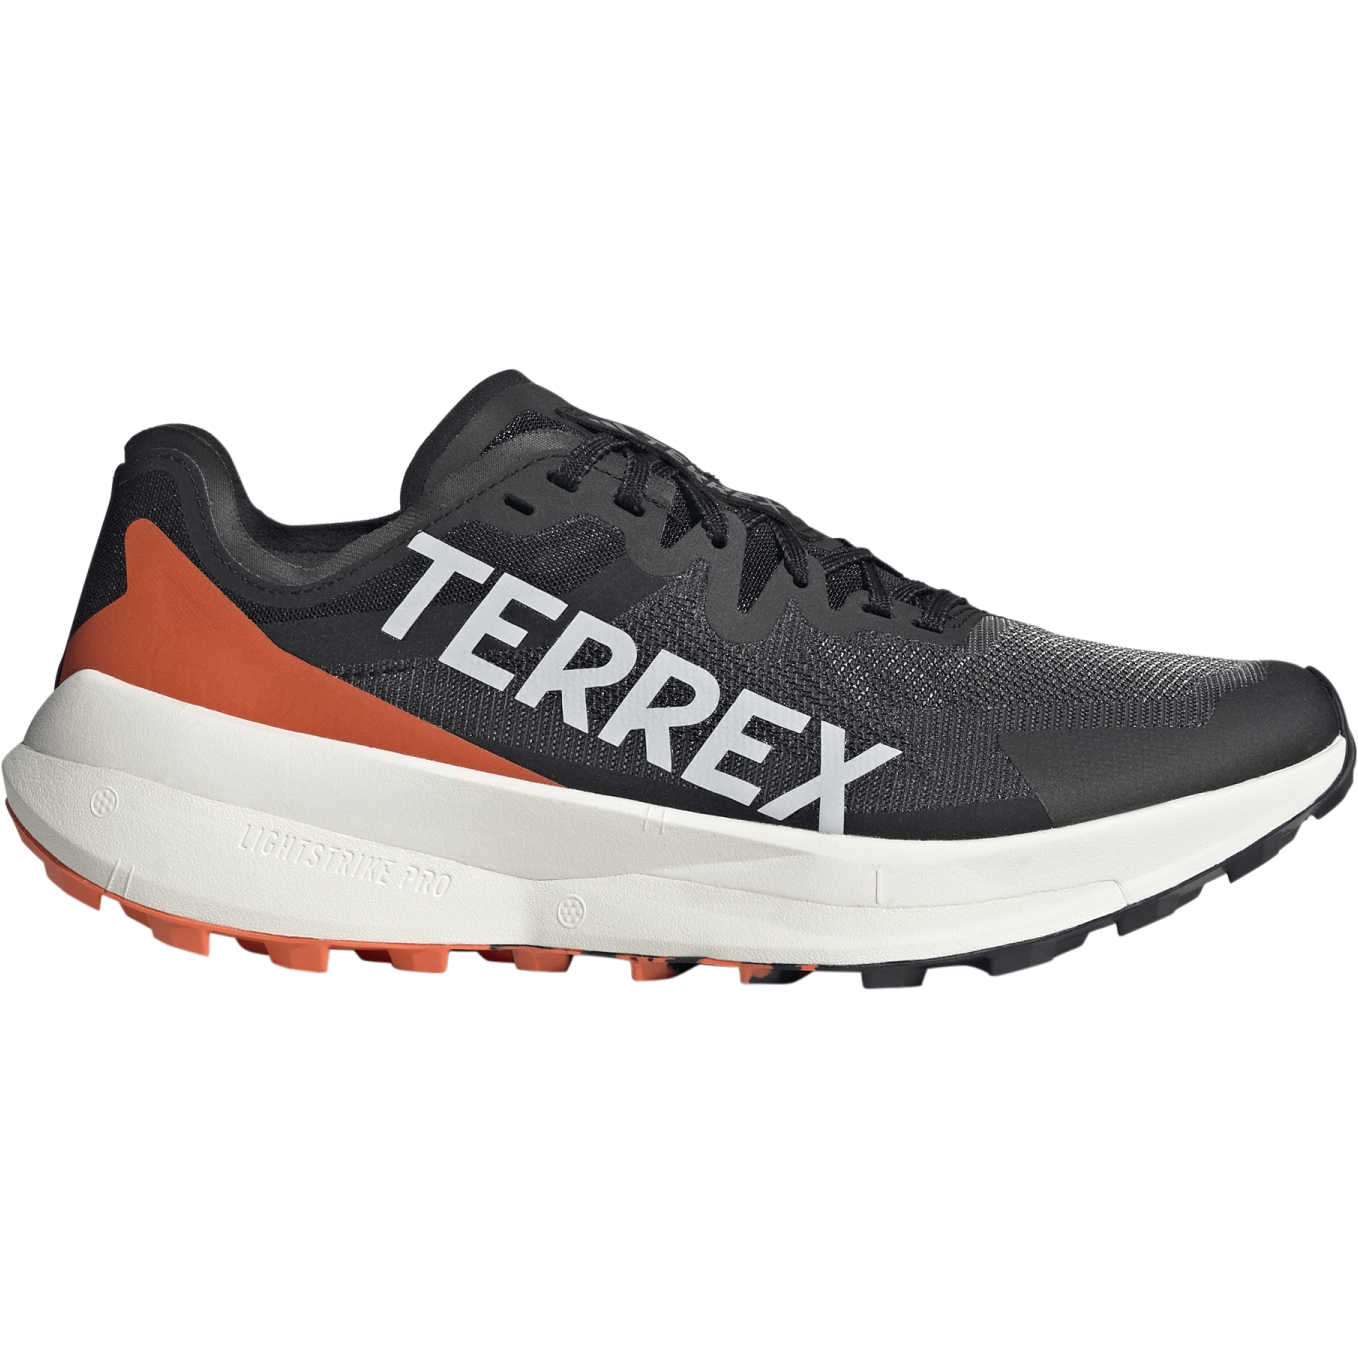 Immagine prodotto da adidas Scarpe da Trailrunning Uomo - TERREX Agravic Speed - core black/grey one/impact orange IG8017